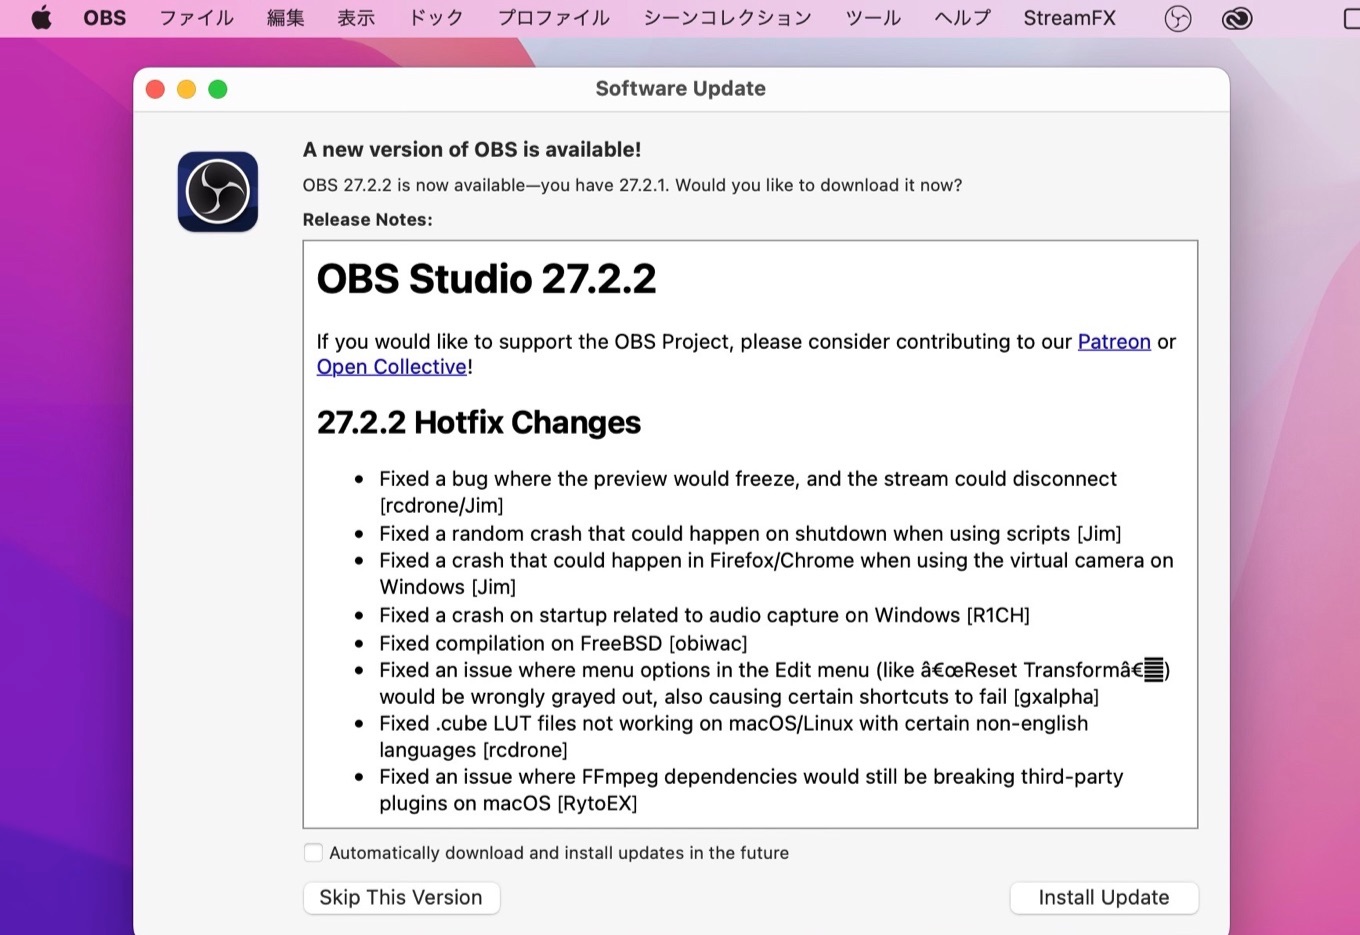 OBS Studio v27.2.2 update